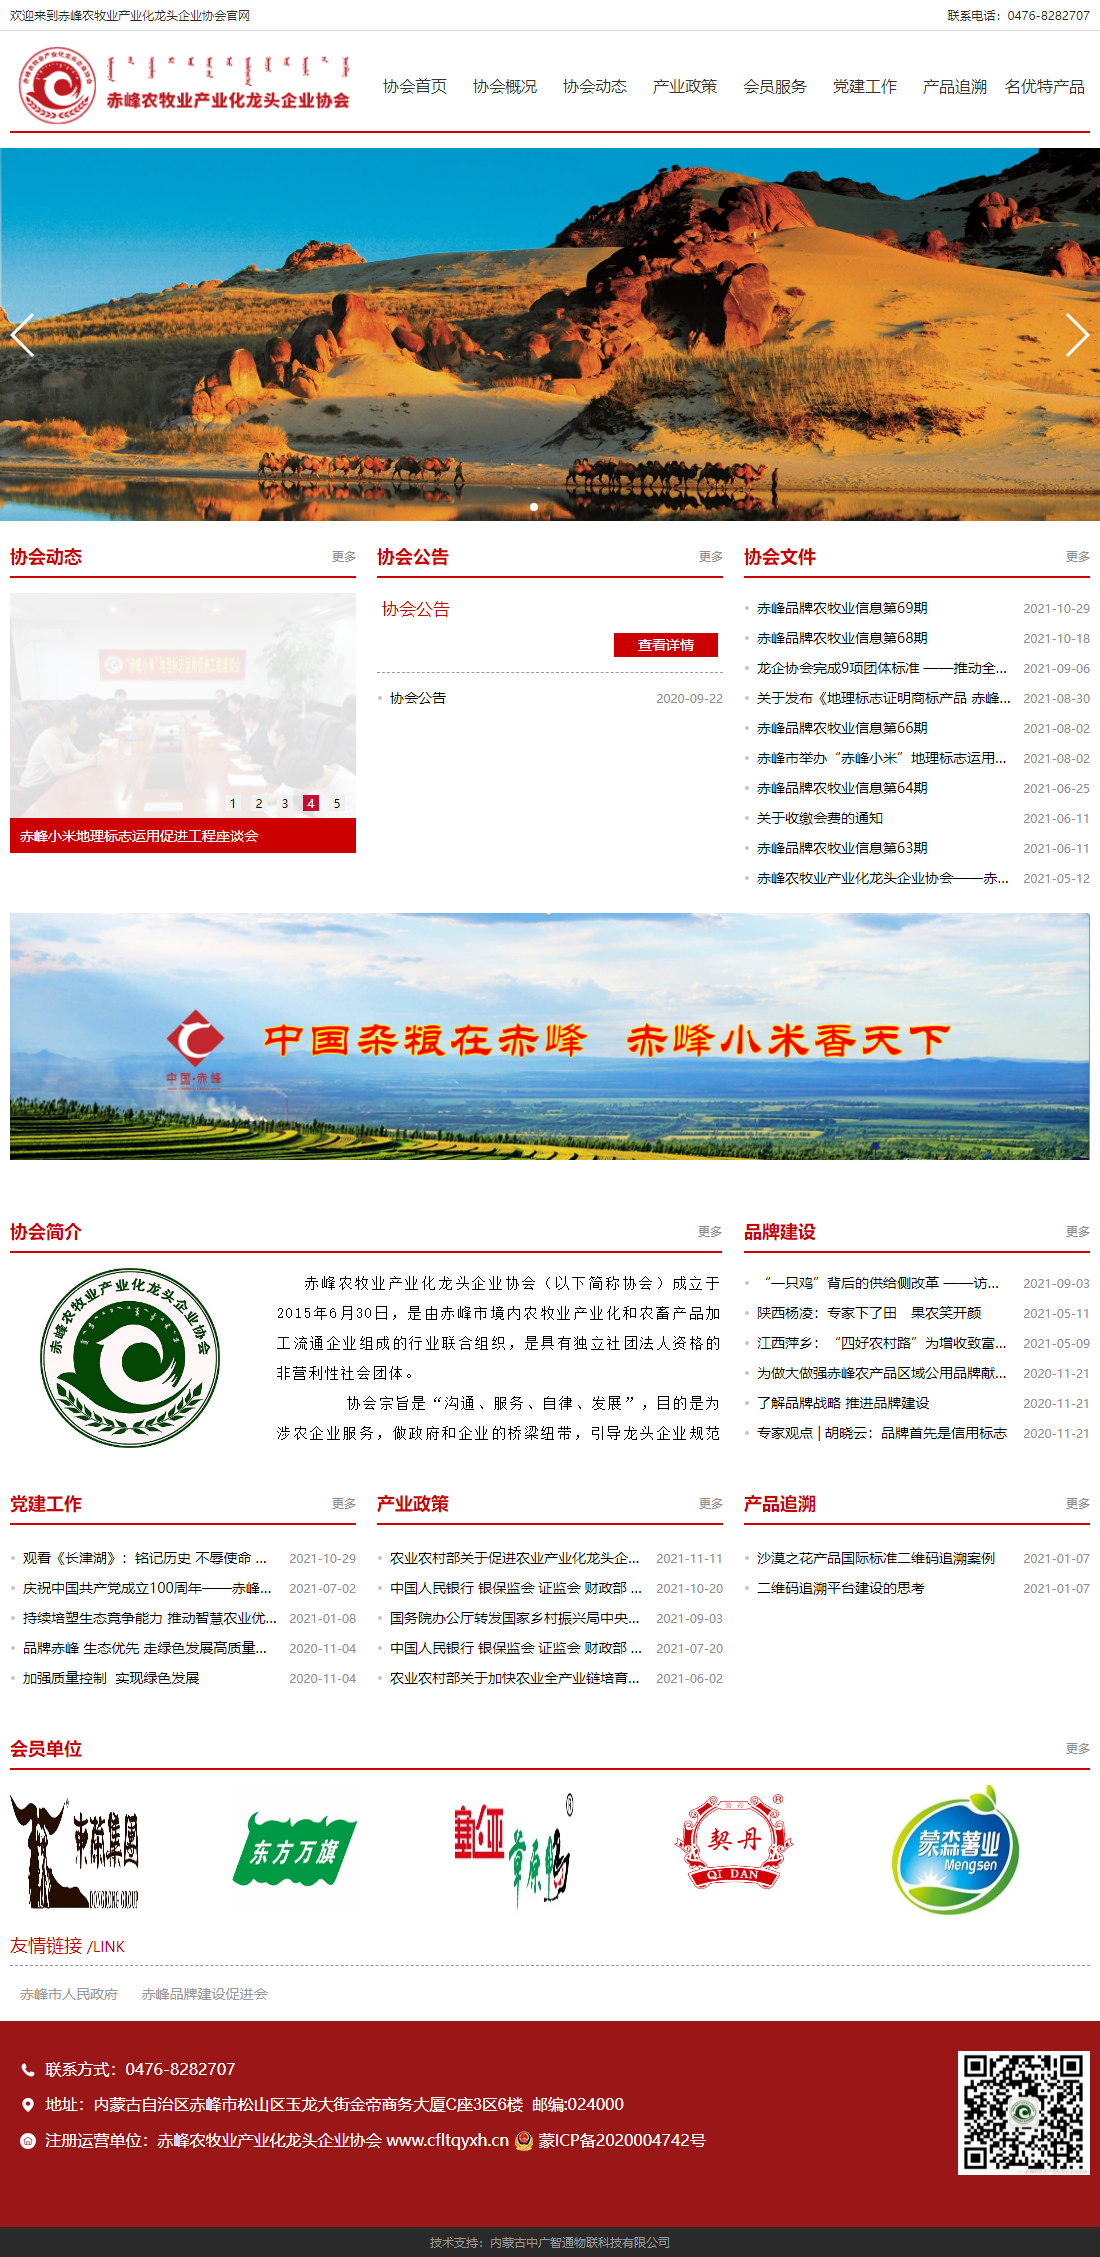 赤峰农牧业产业化龙头企业协会网站案例